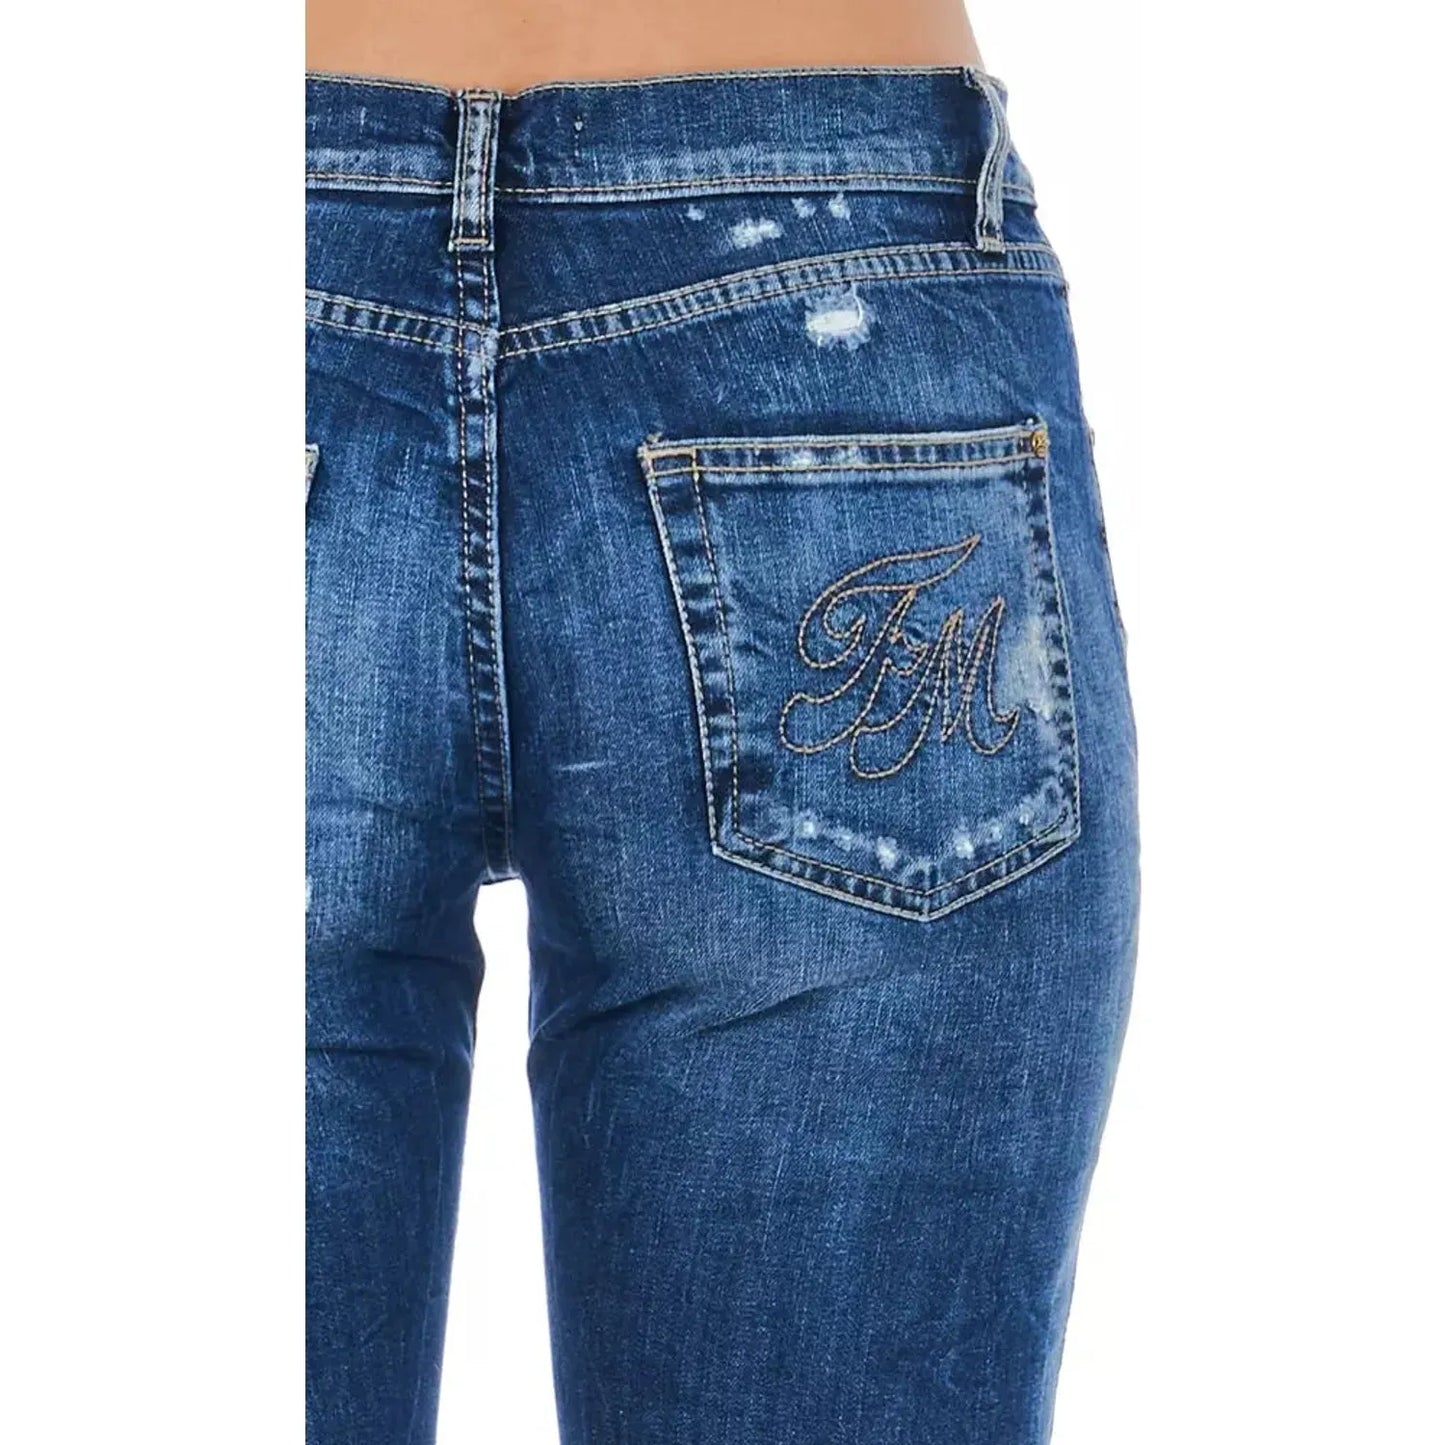 Frankie Morello Blue Cotton Blend Worn Wash Jeans blue-cotton-jeans-pant-51 product-21765-1471885245-22-428cf5b0-311.webp